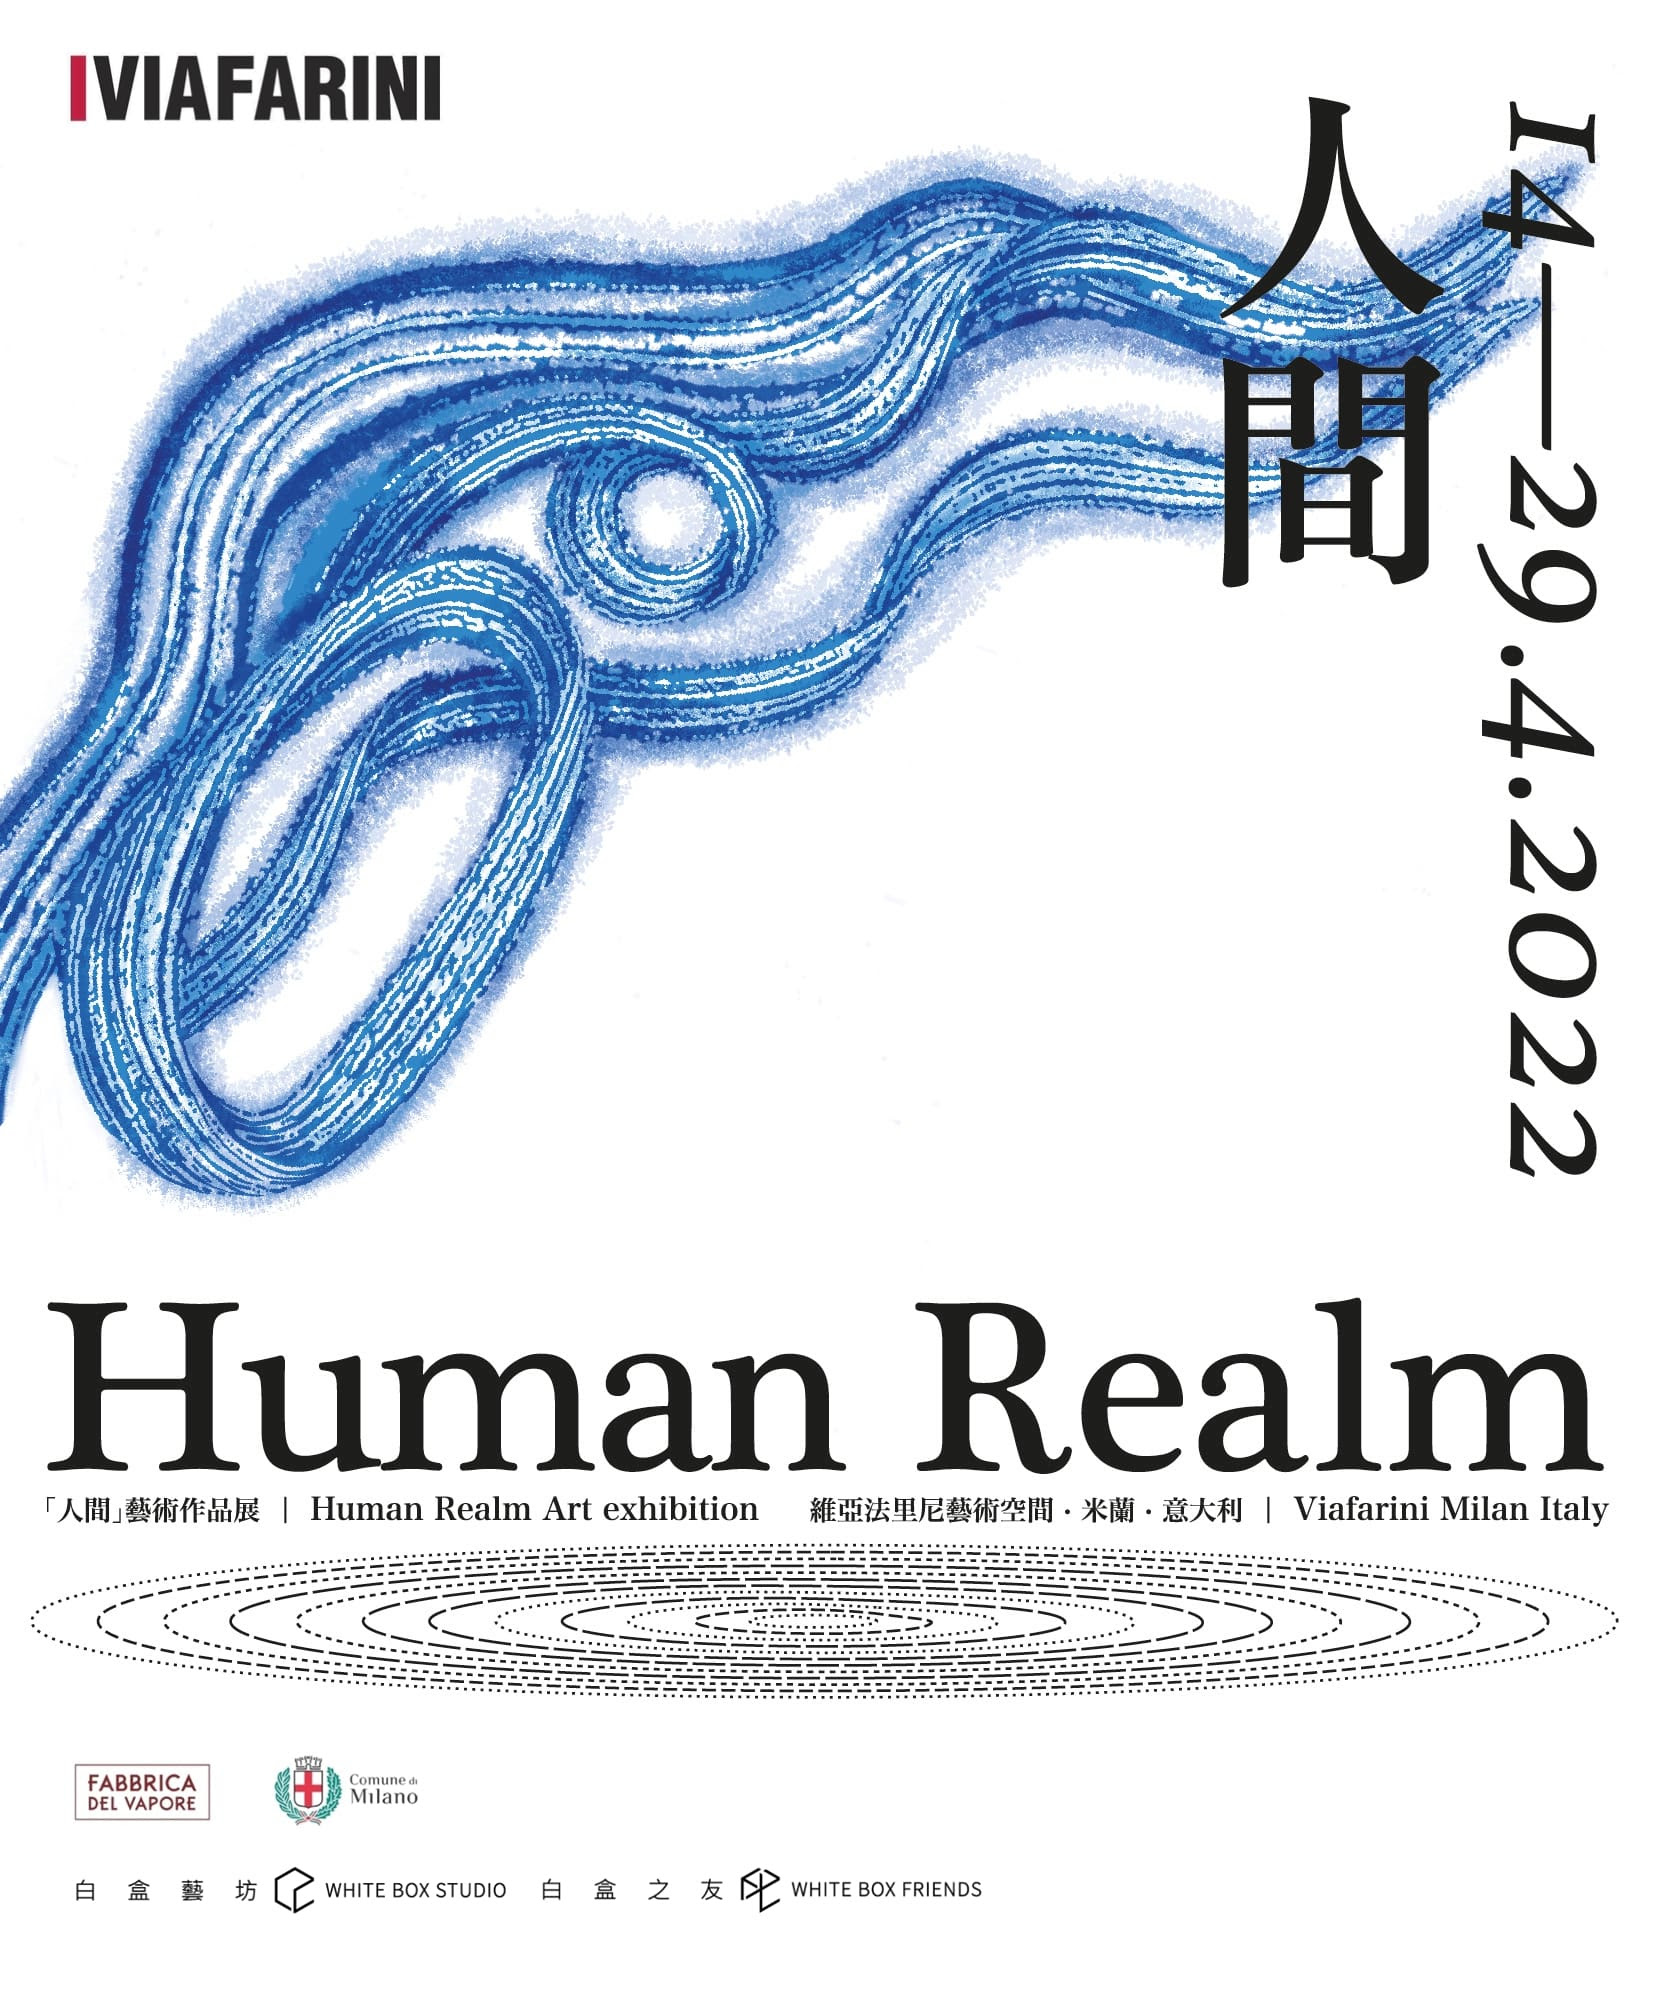 Human Realm